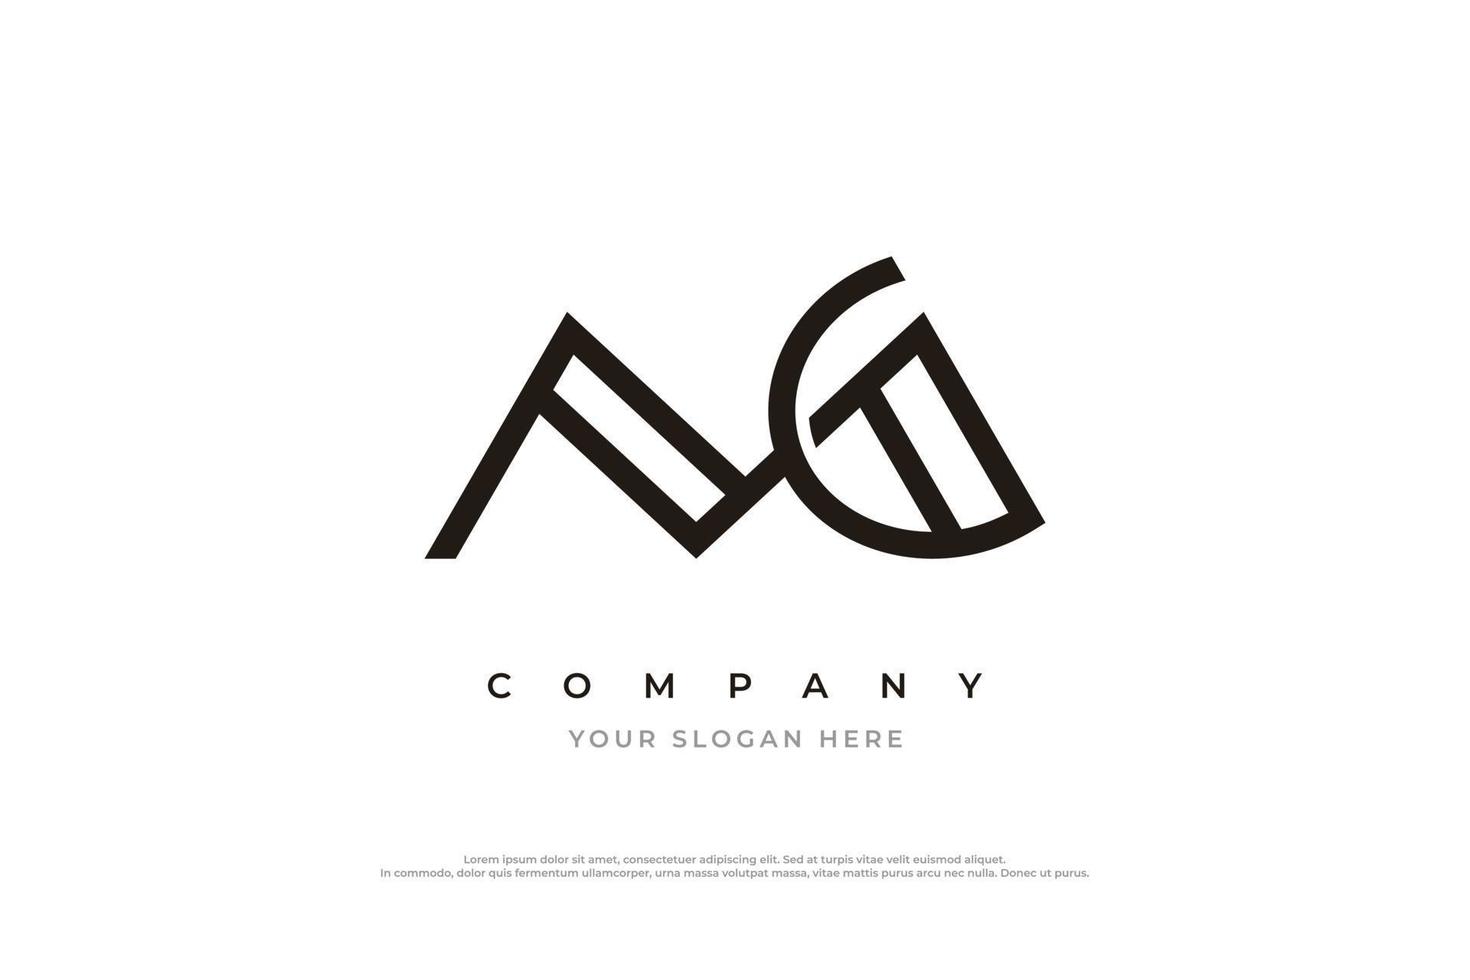 Initial Letter MG Monogram Logo Design Vector